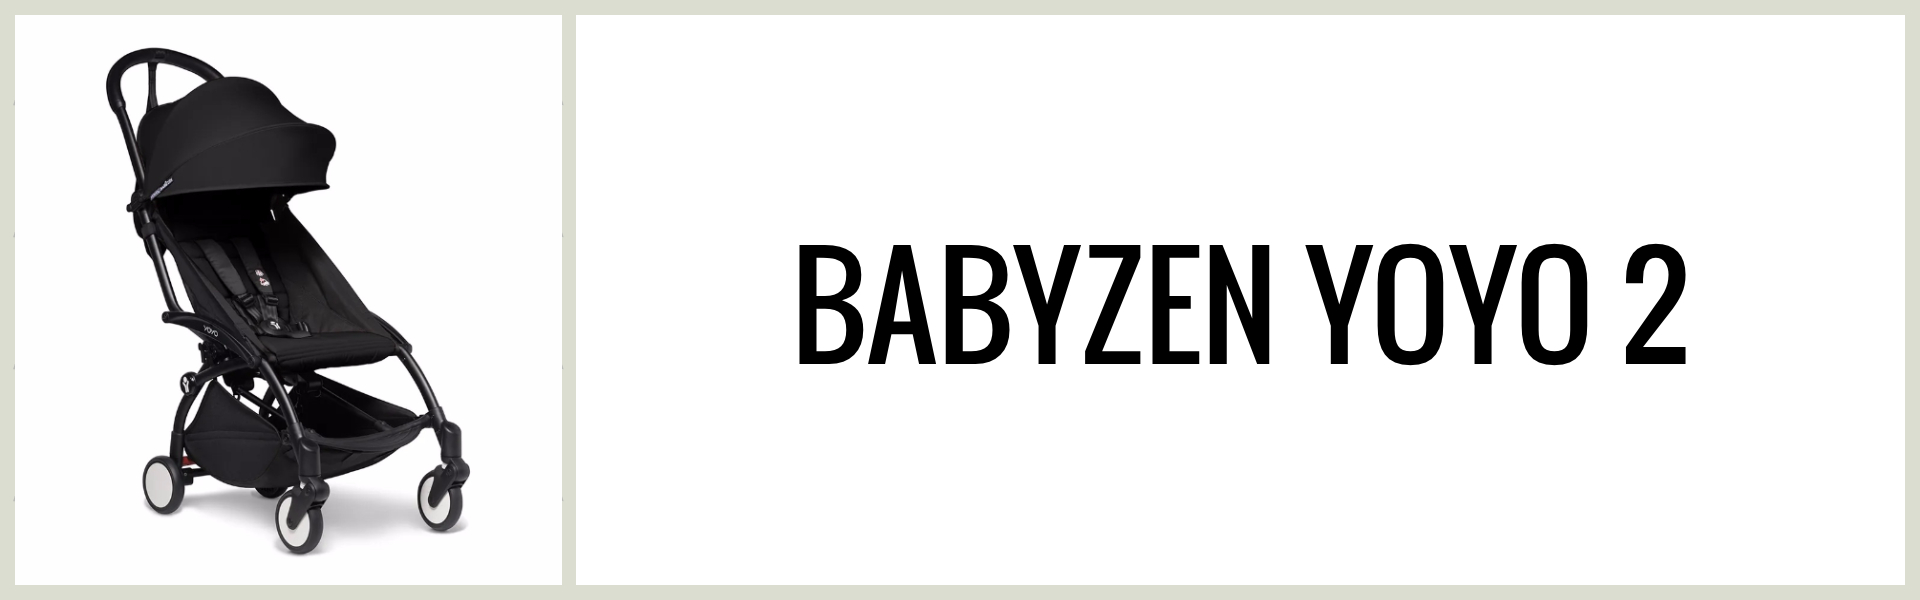 Omdöme: Hur är Babyzen Yoyo 2 som resevagn?